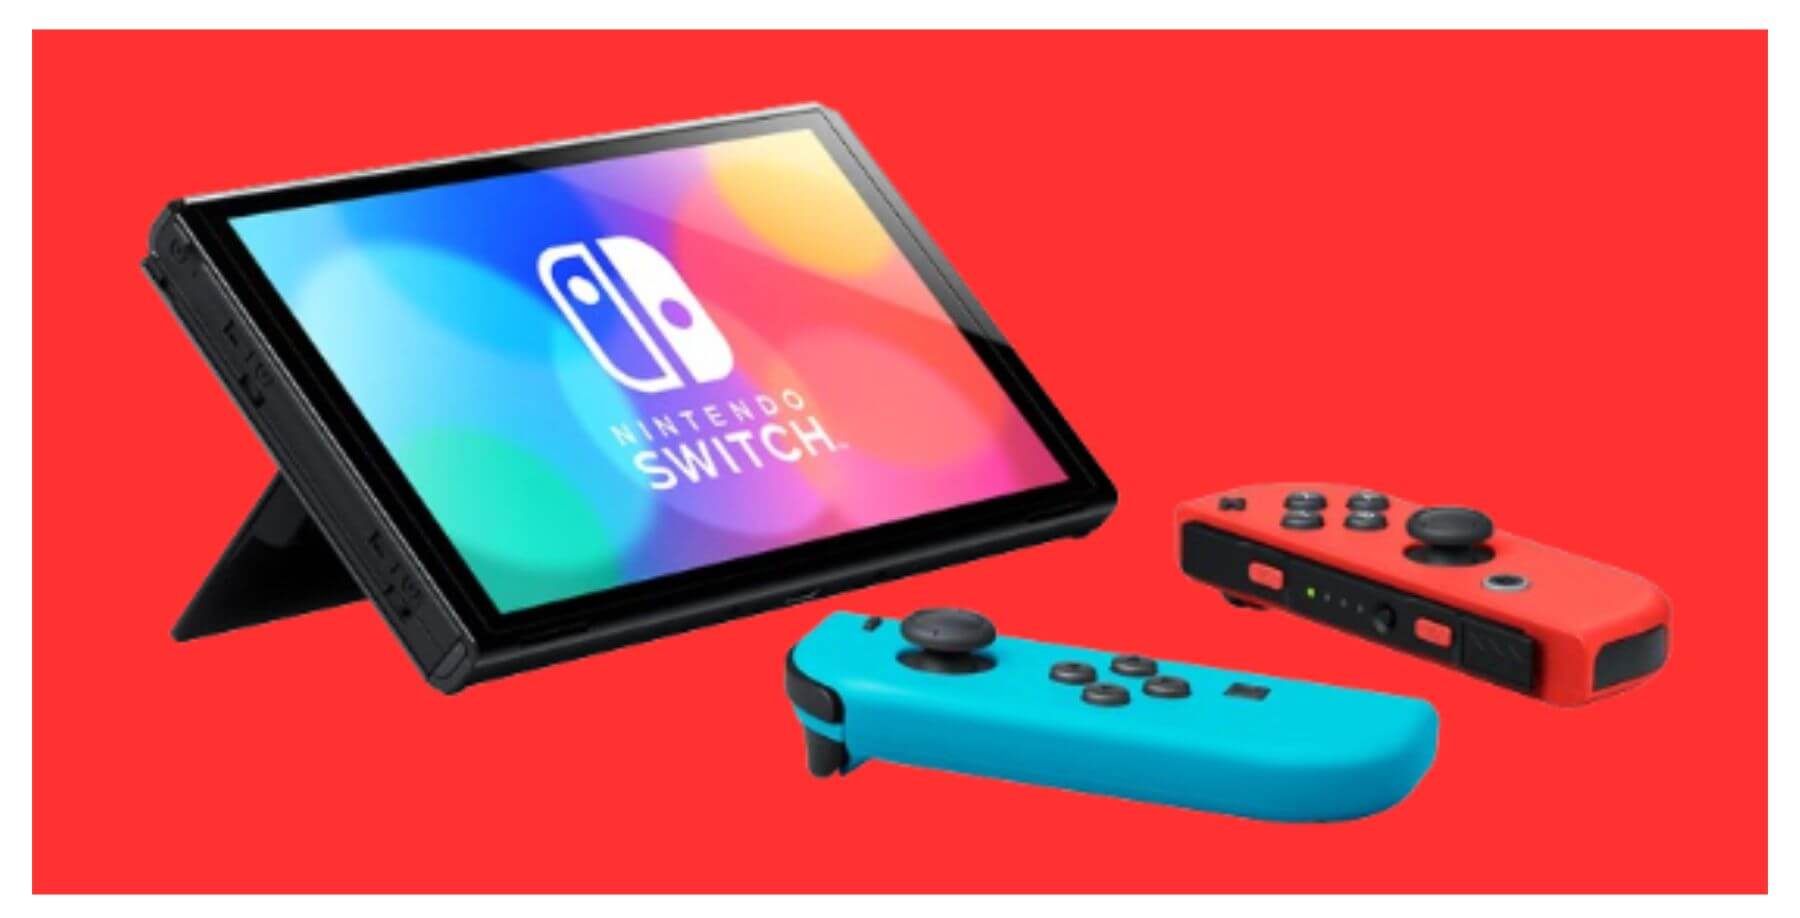 Fundo vermelho, com bordas brancas e um console do Nintendo Switch ao centro